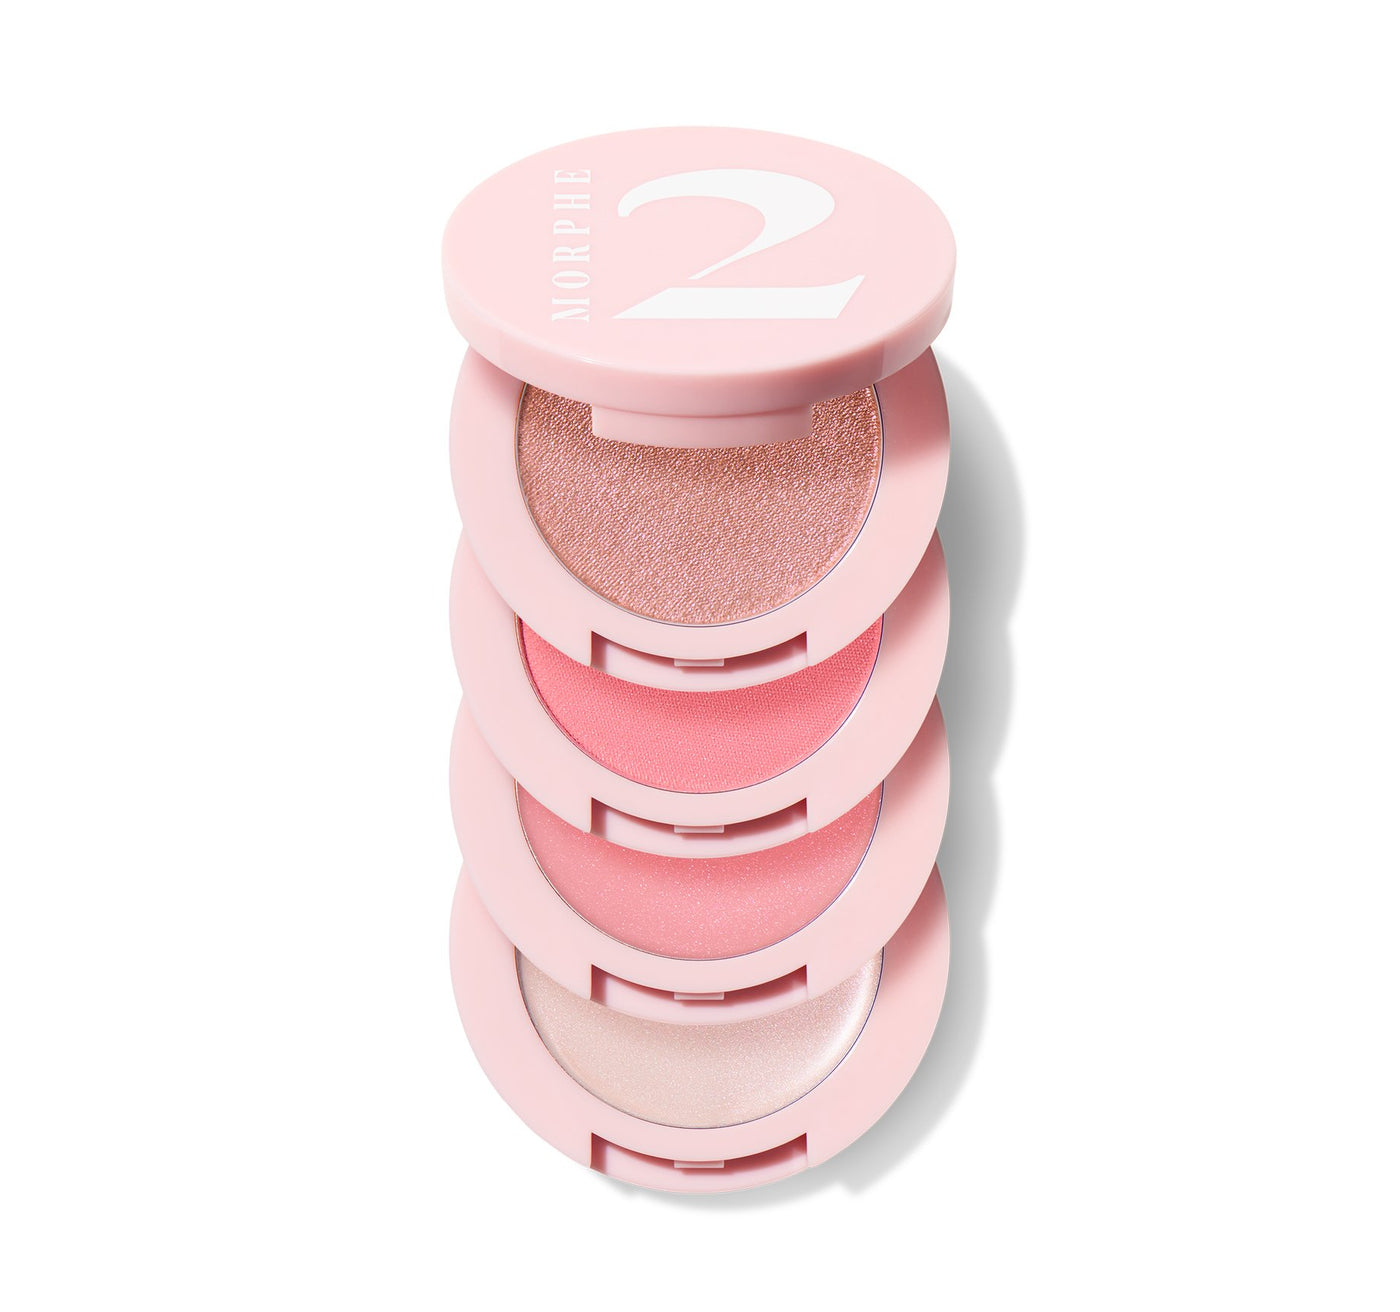 Morphe Quad Goals Multi-palette - Pink Please